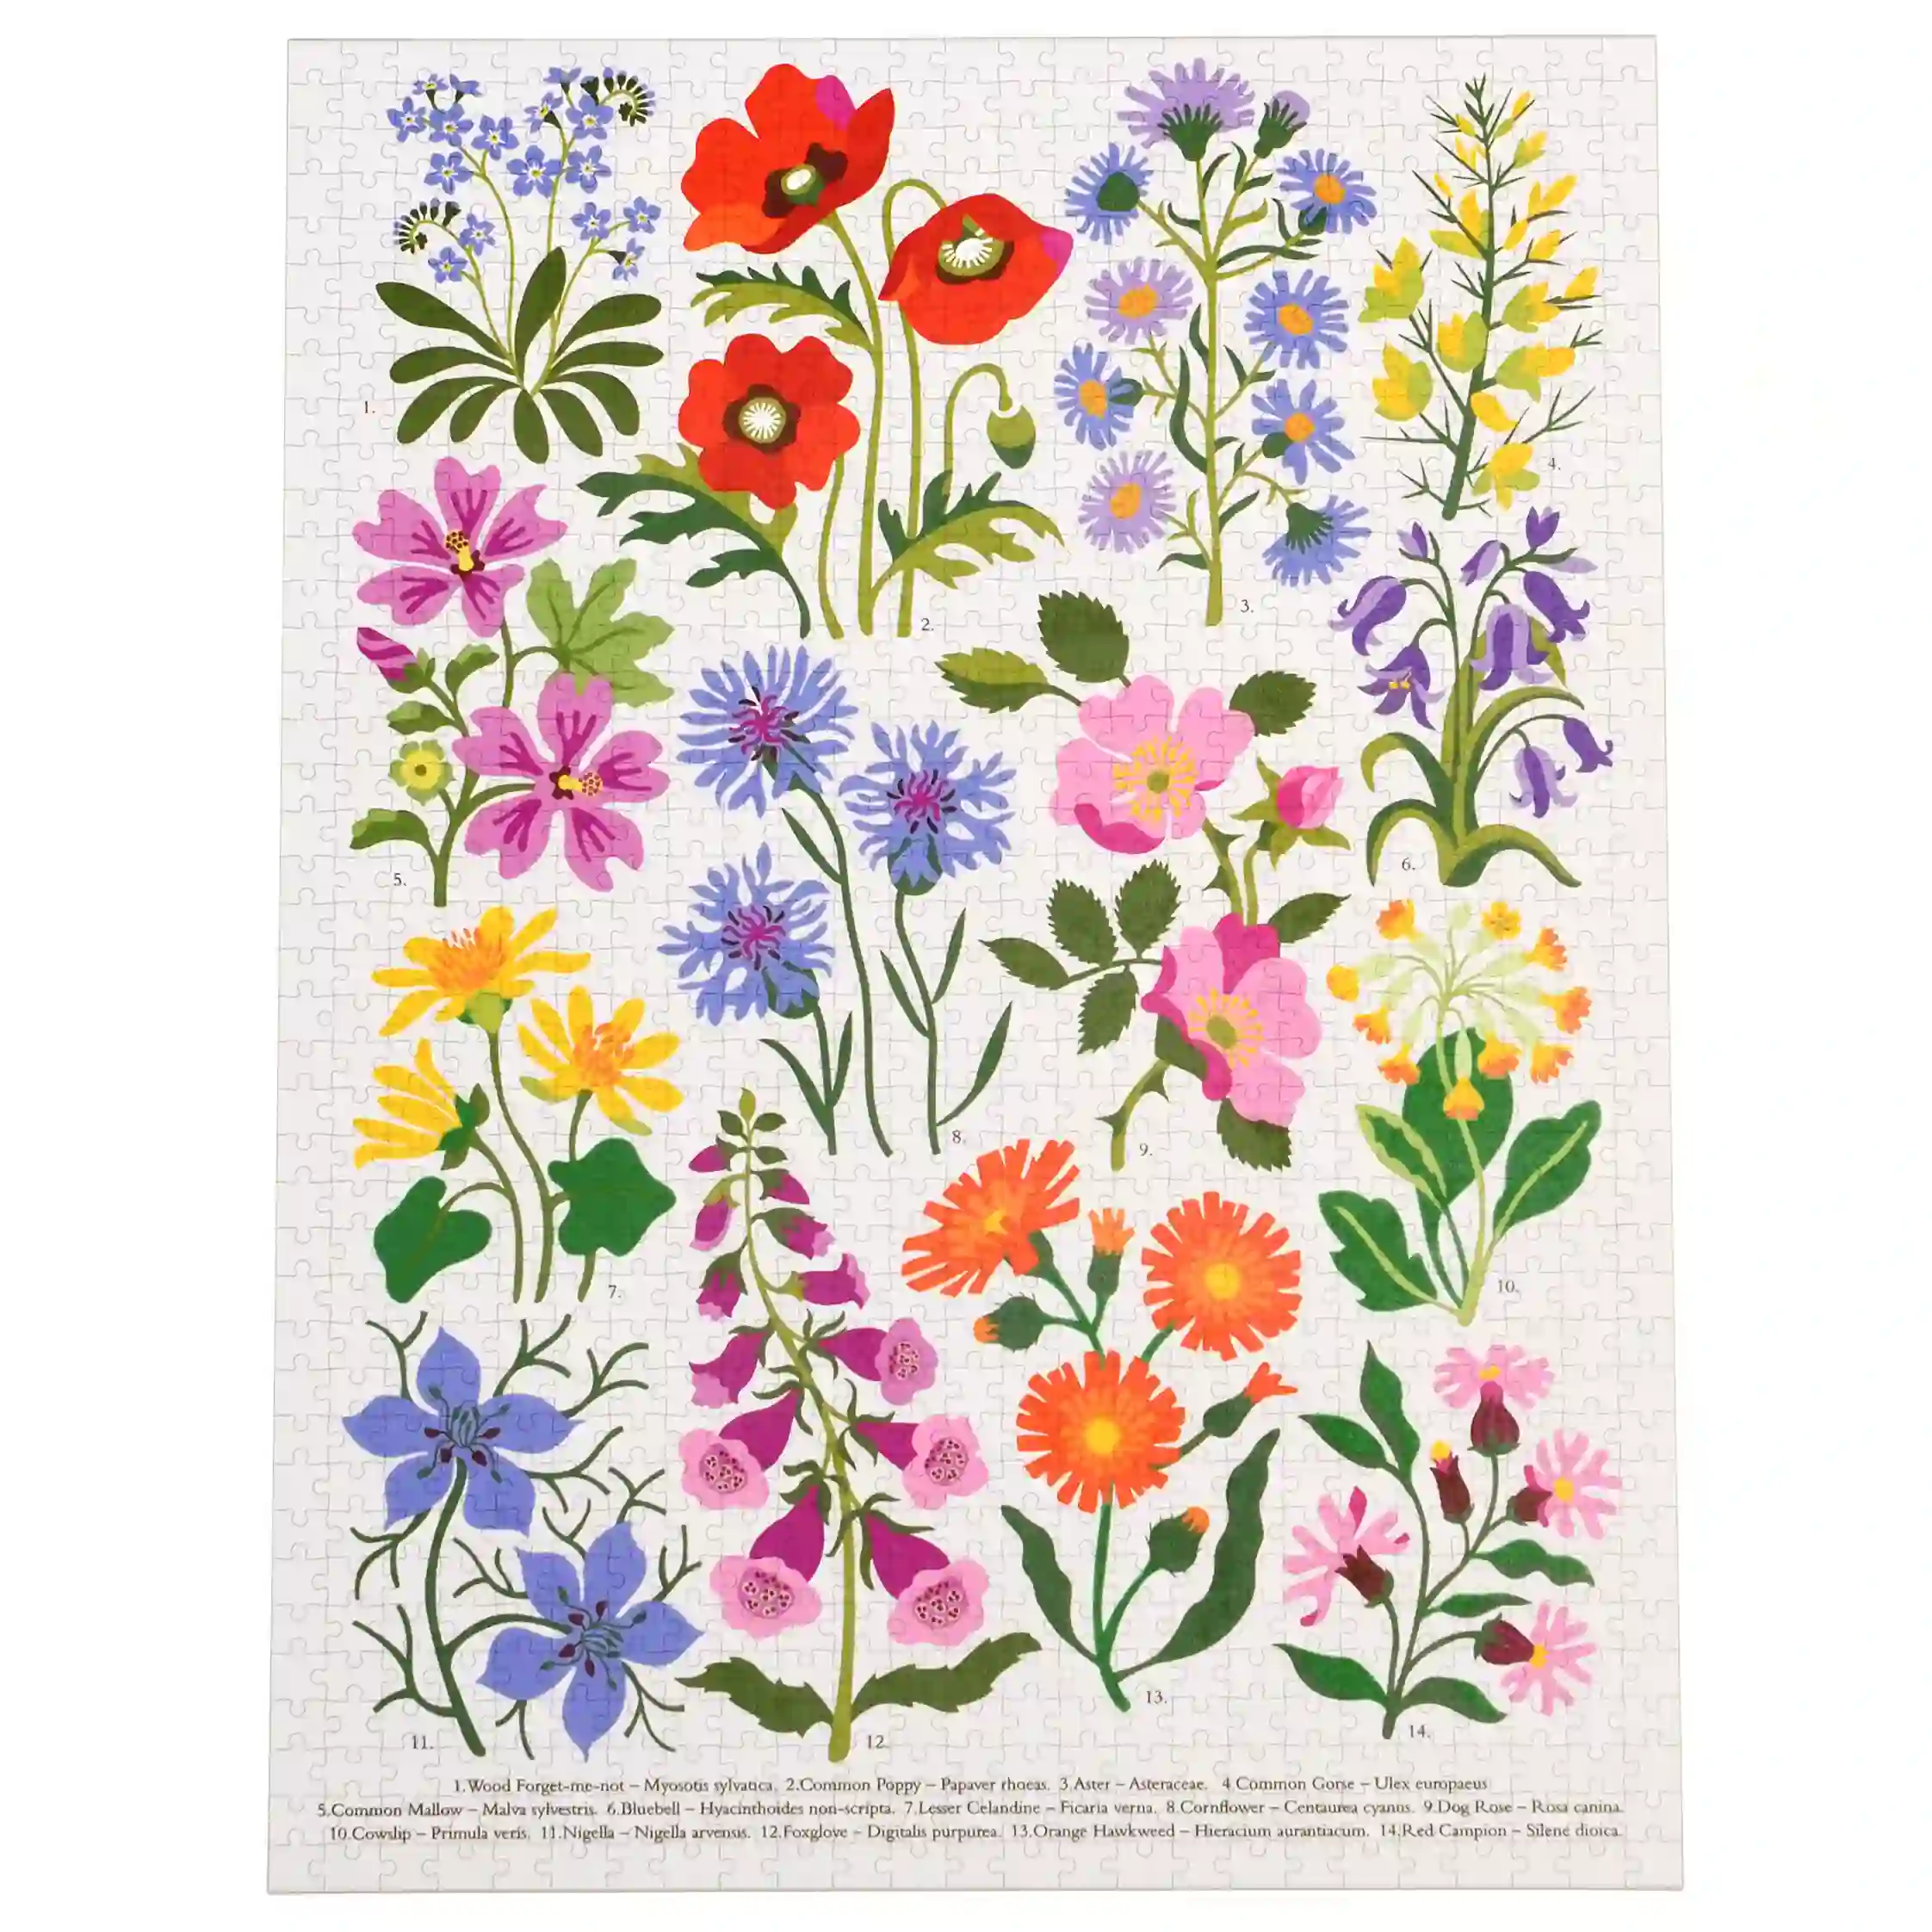 jigsaw puzzle (1000 pieces) - wild flowers